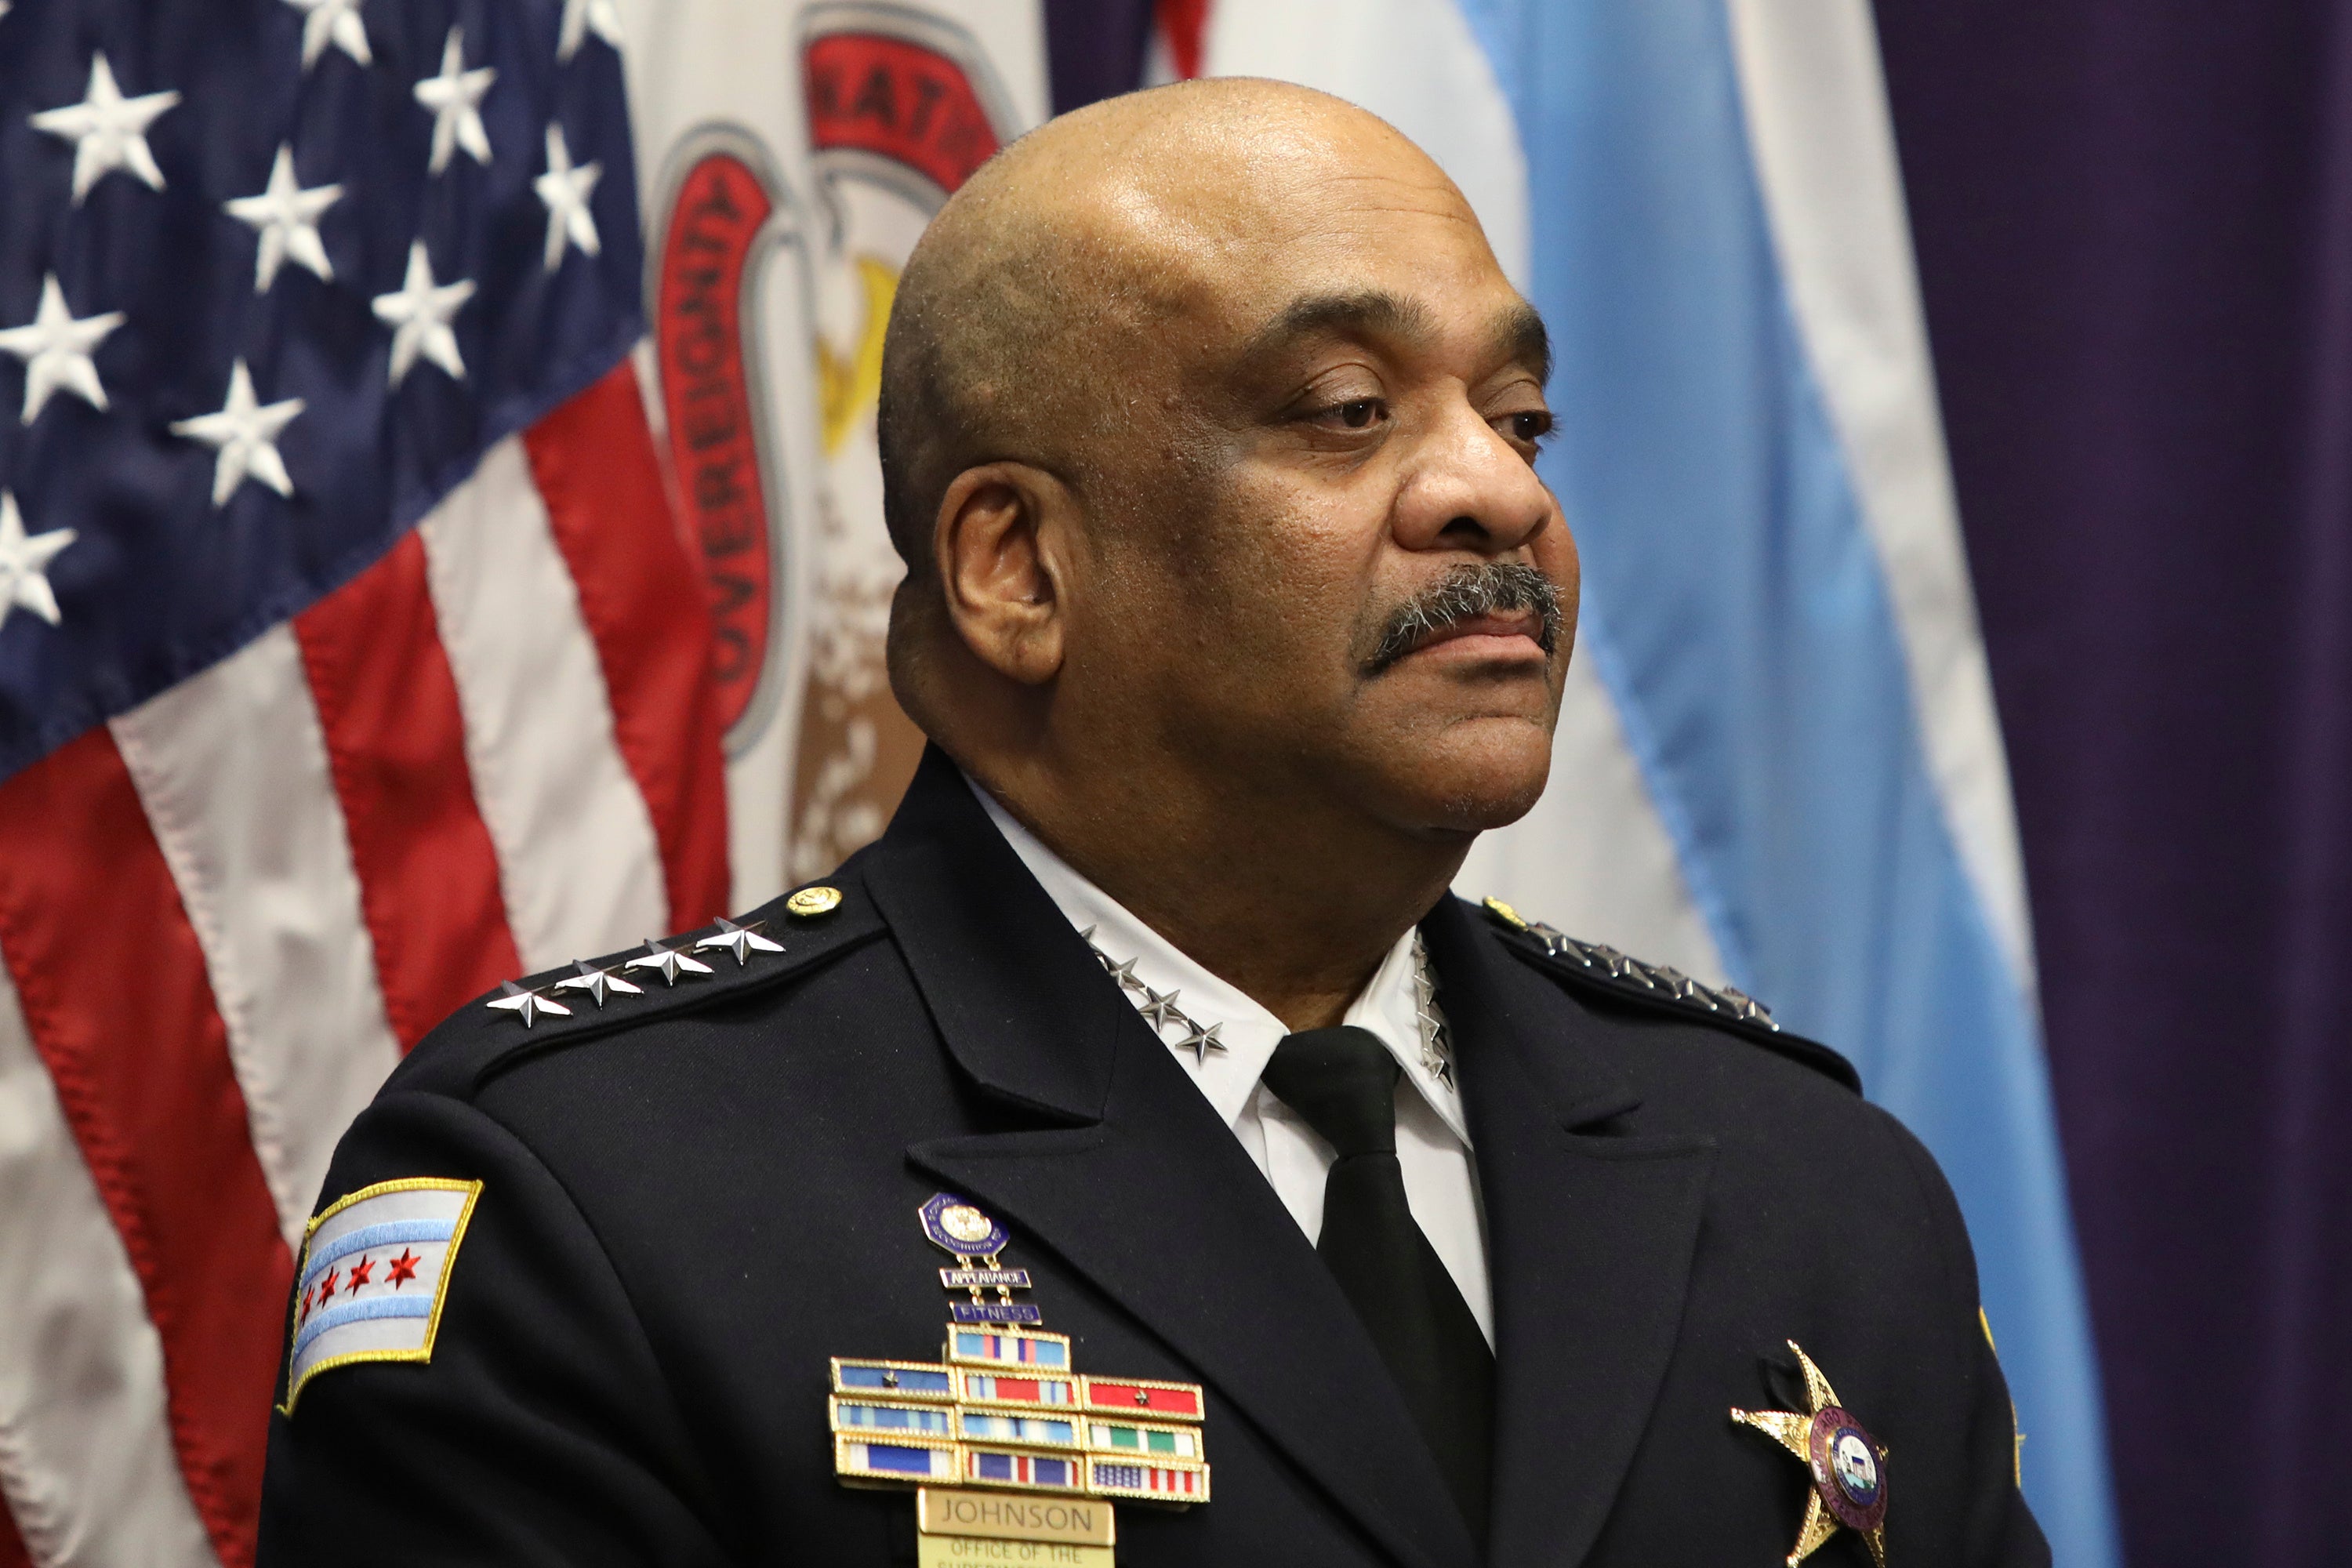 Superintendente de la policía de Chicago despedido